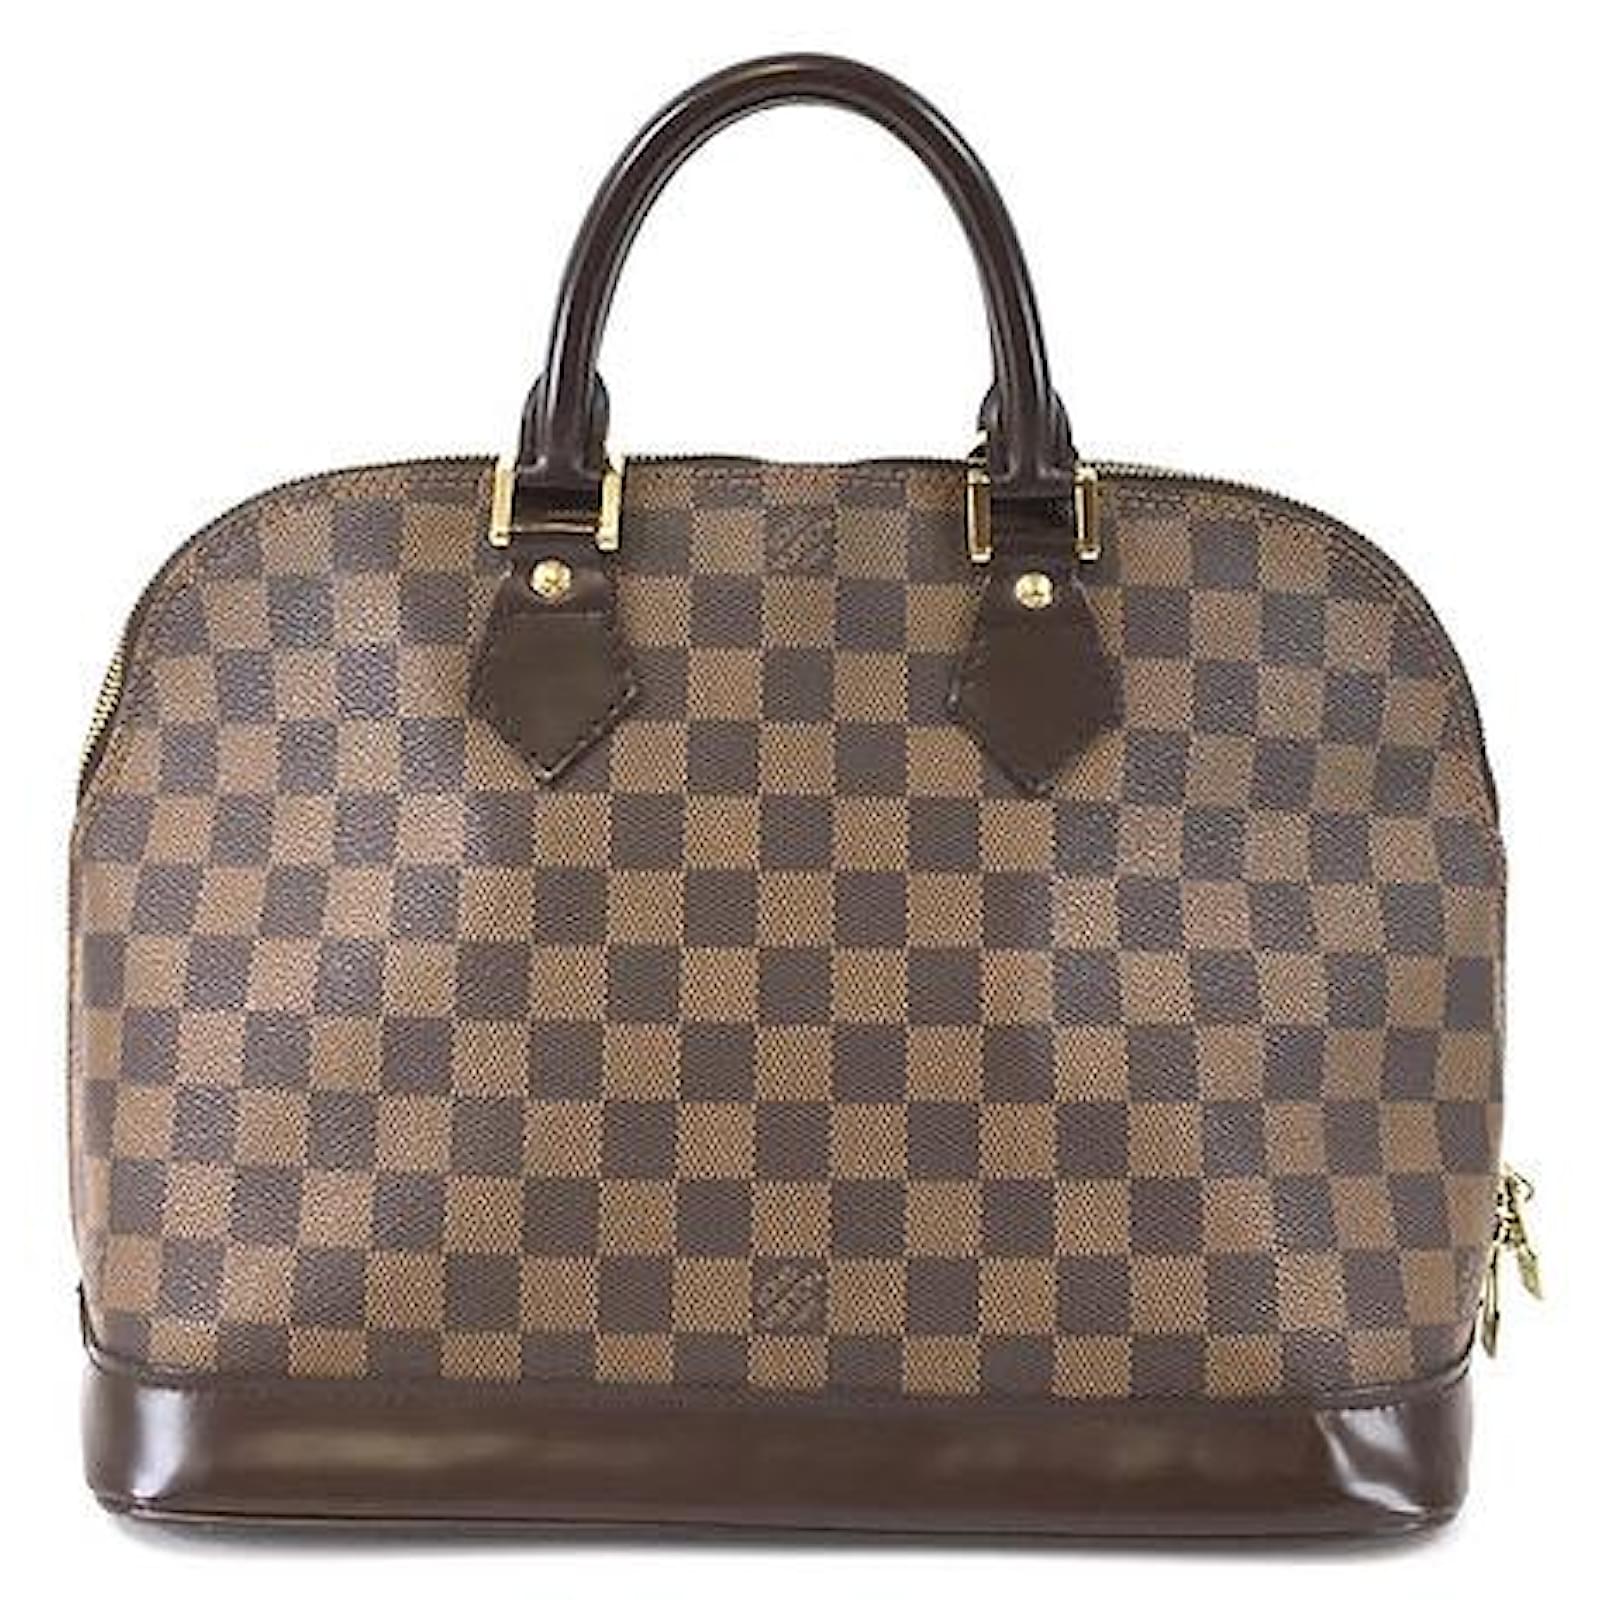 Louis Vuitton Alma BB Damier Ebene Canvas Handbag